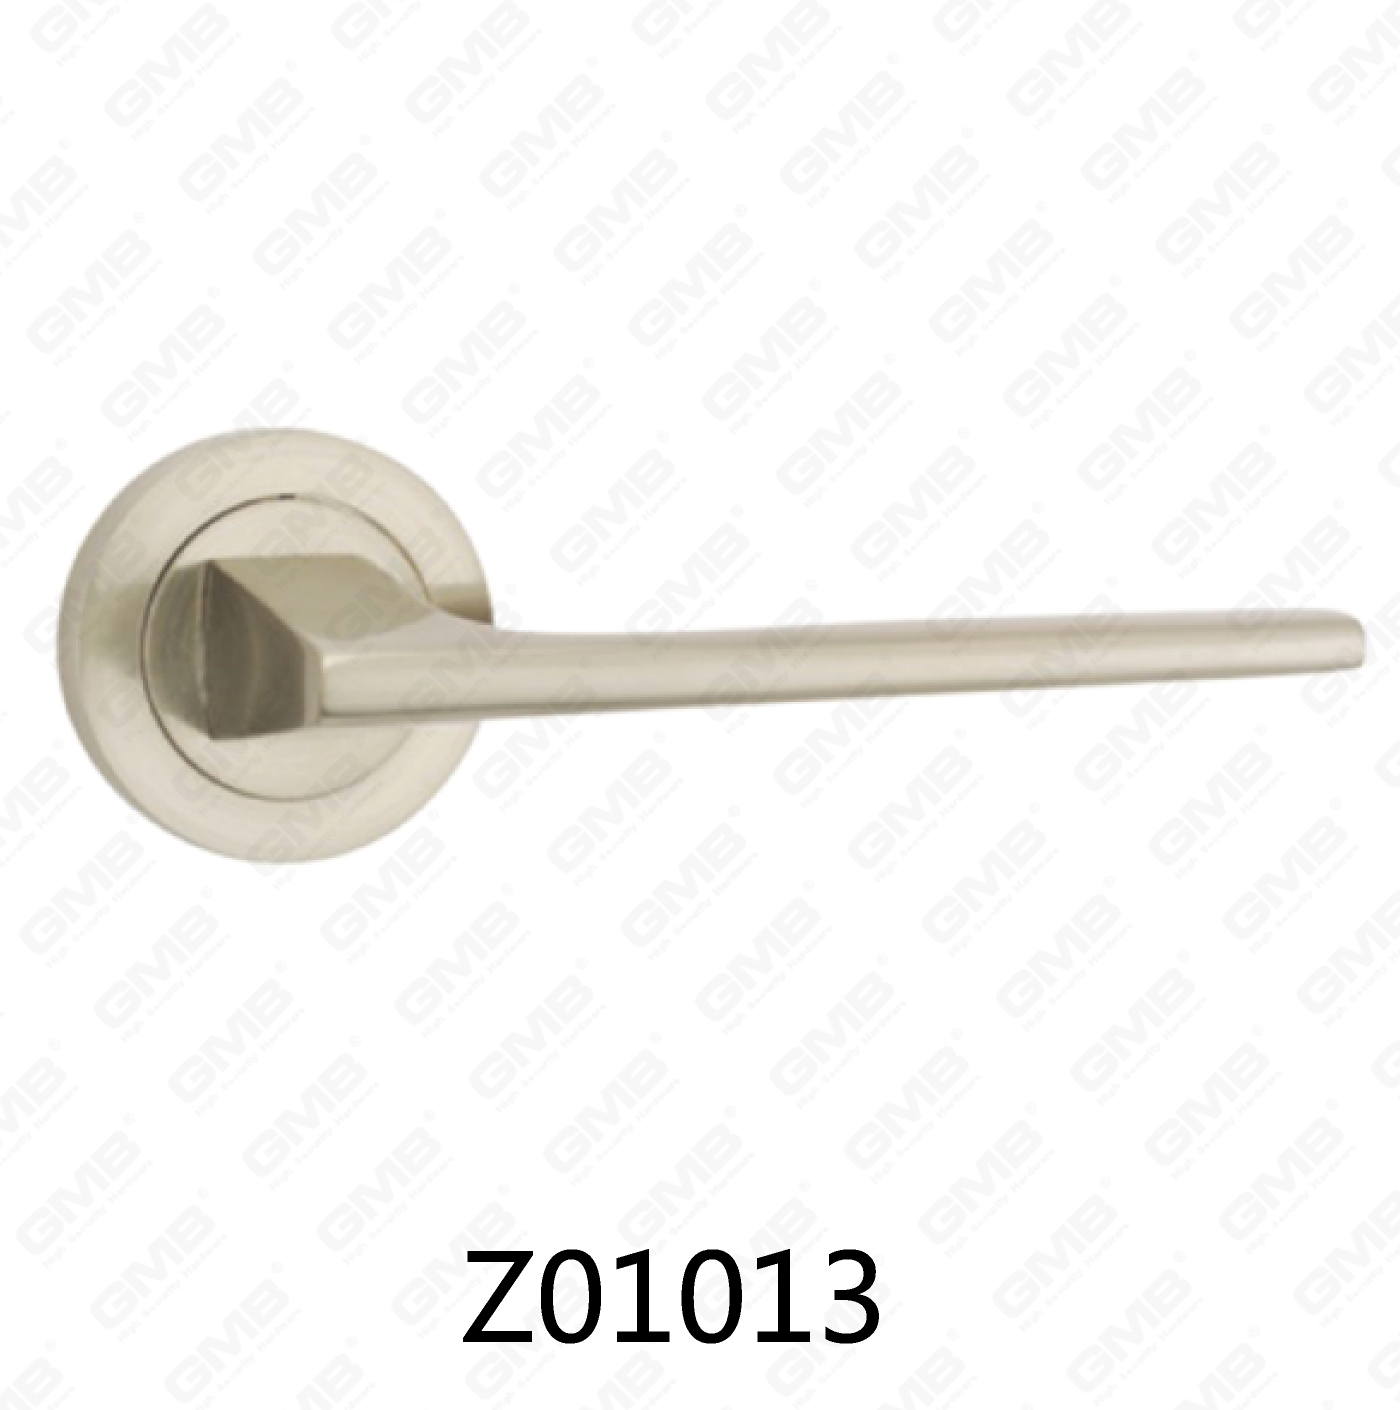 ידית דלת רוזטת אלומיניום מסגסוגת אבץ של Zamak עם רוזטה עגולה (Z01013)